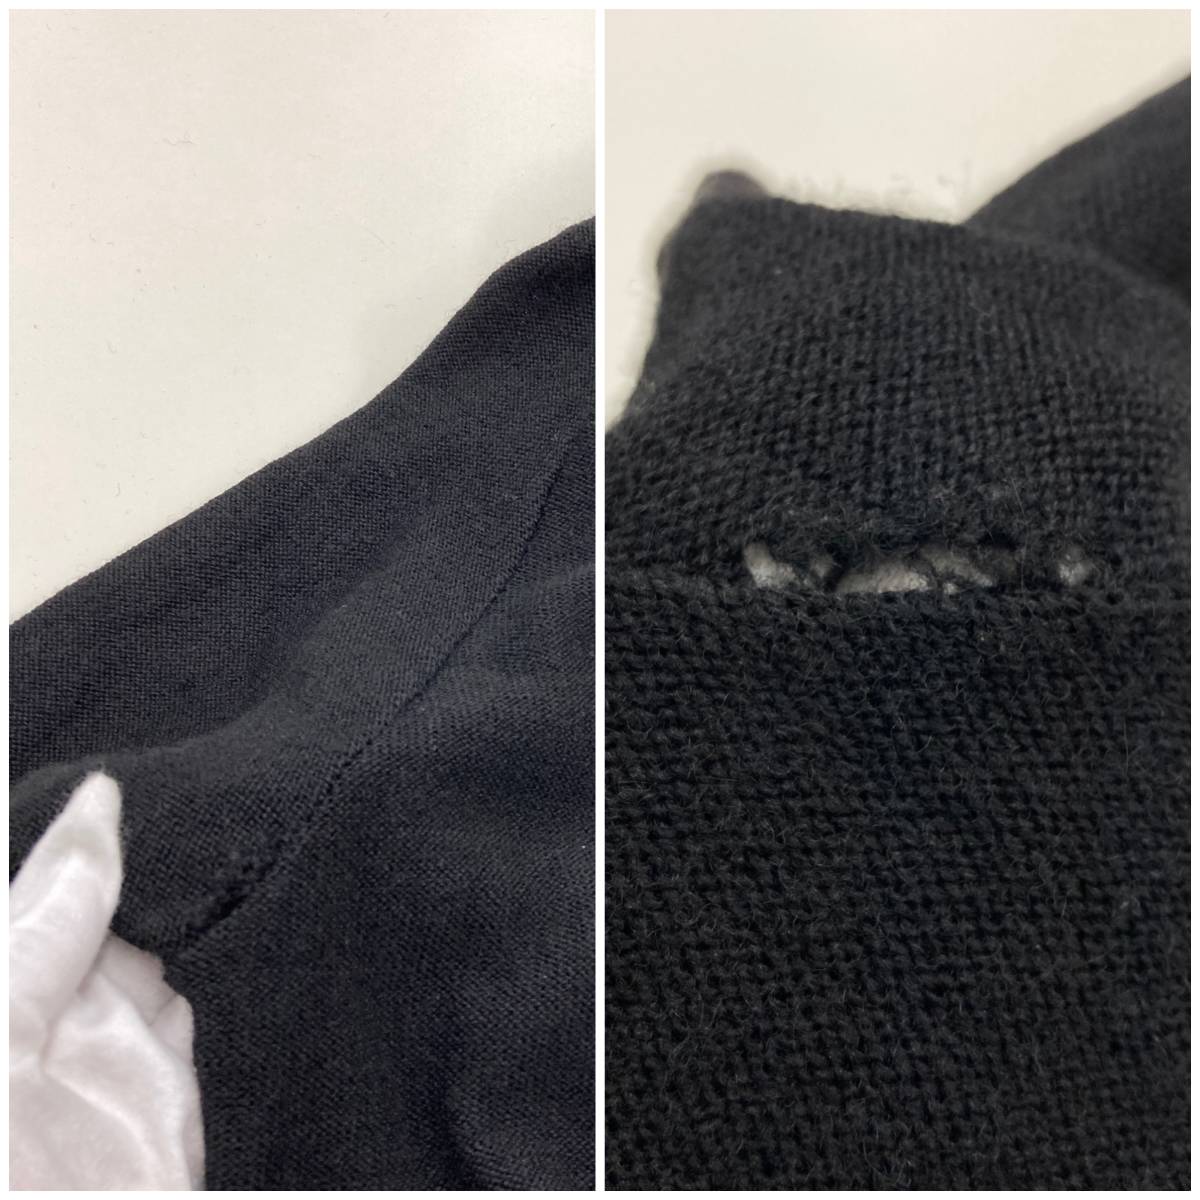 UNDERCOVER 2007AW объем шея ребра переключатель карман вязаный свитер черный чёрный 2 размер undercover VINTAGE archive 1266